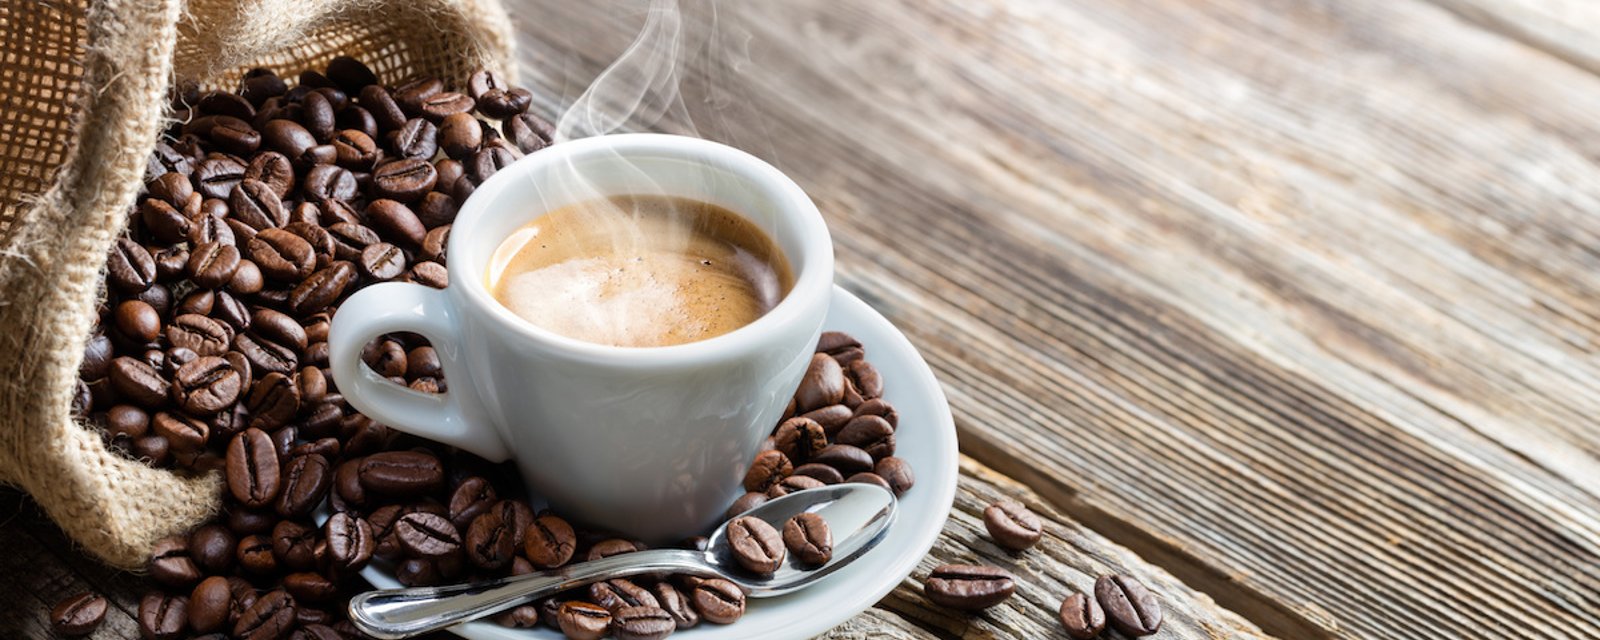 7 informations sur le café qui vous donneront envie de vous servir une tasse